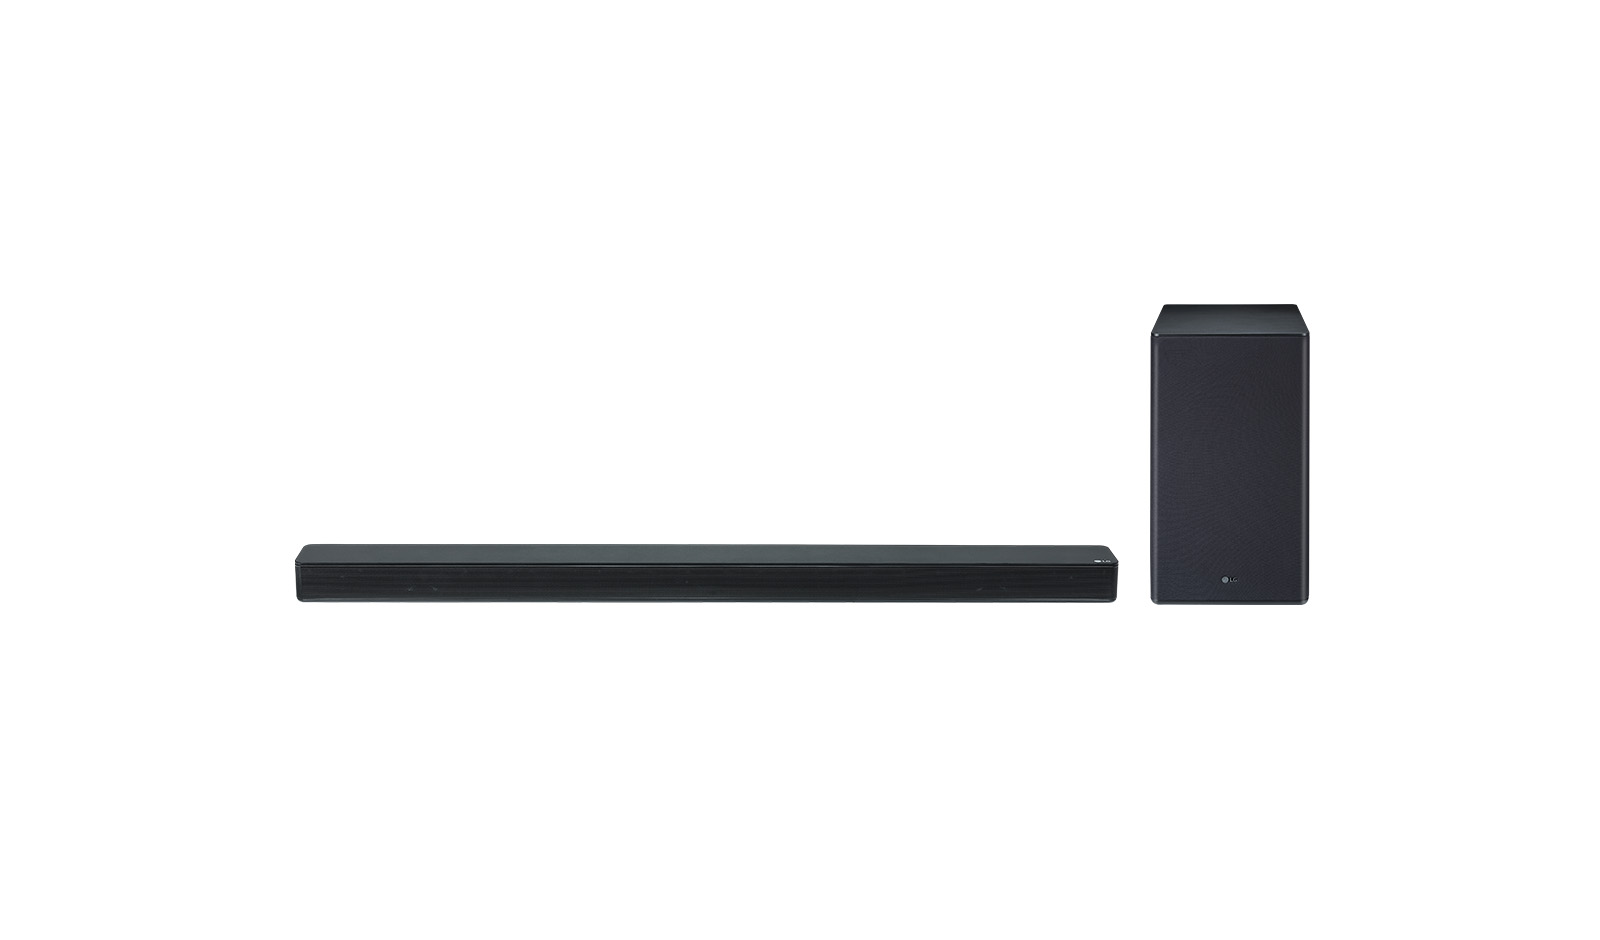 SK8 soundbar speaker 2.1 channels 360 W Black